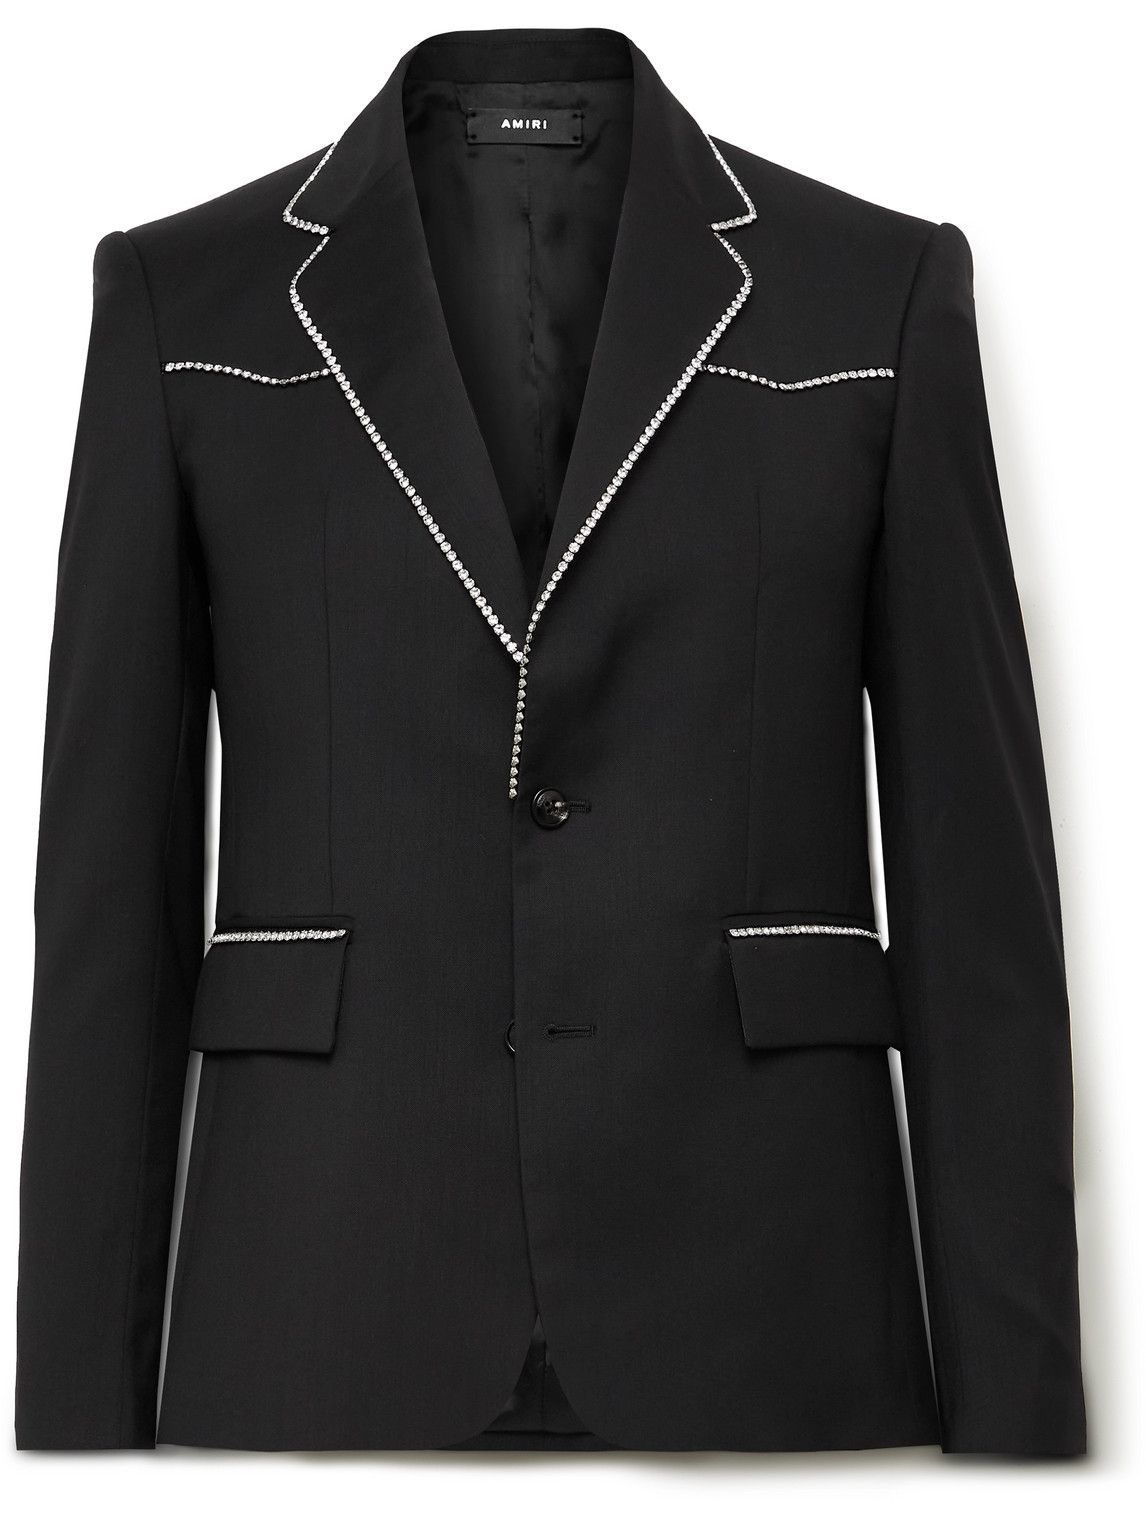 AMIRI - Slim-Fit Crystal-Embellished Wool-Twill Suit Jacket - Black Amiri